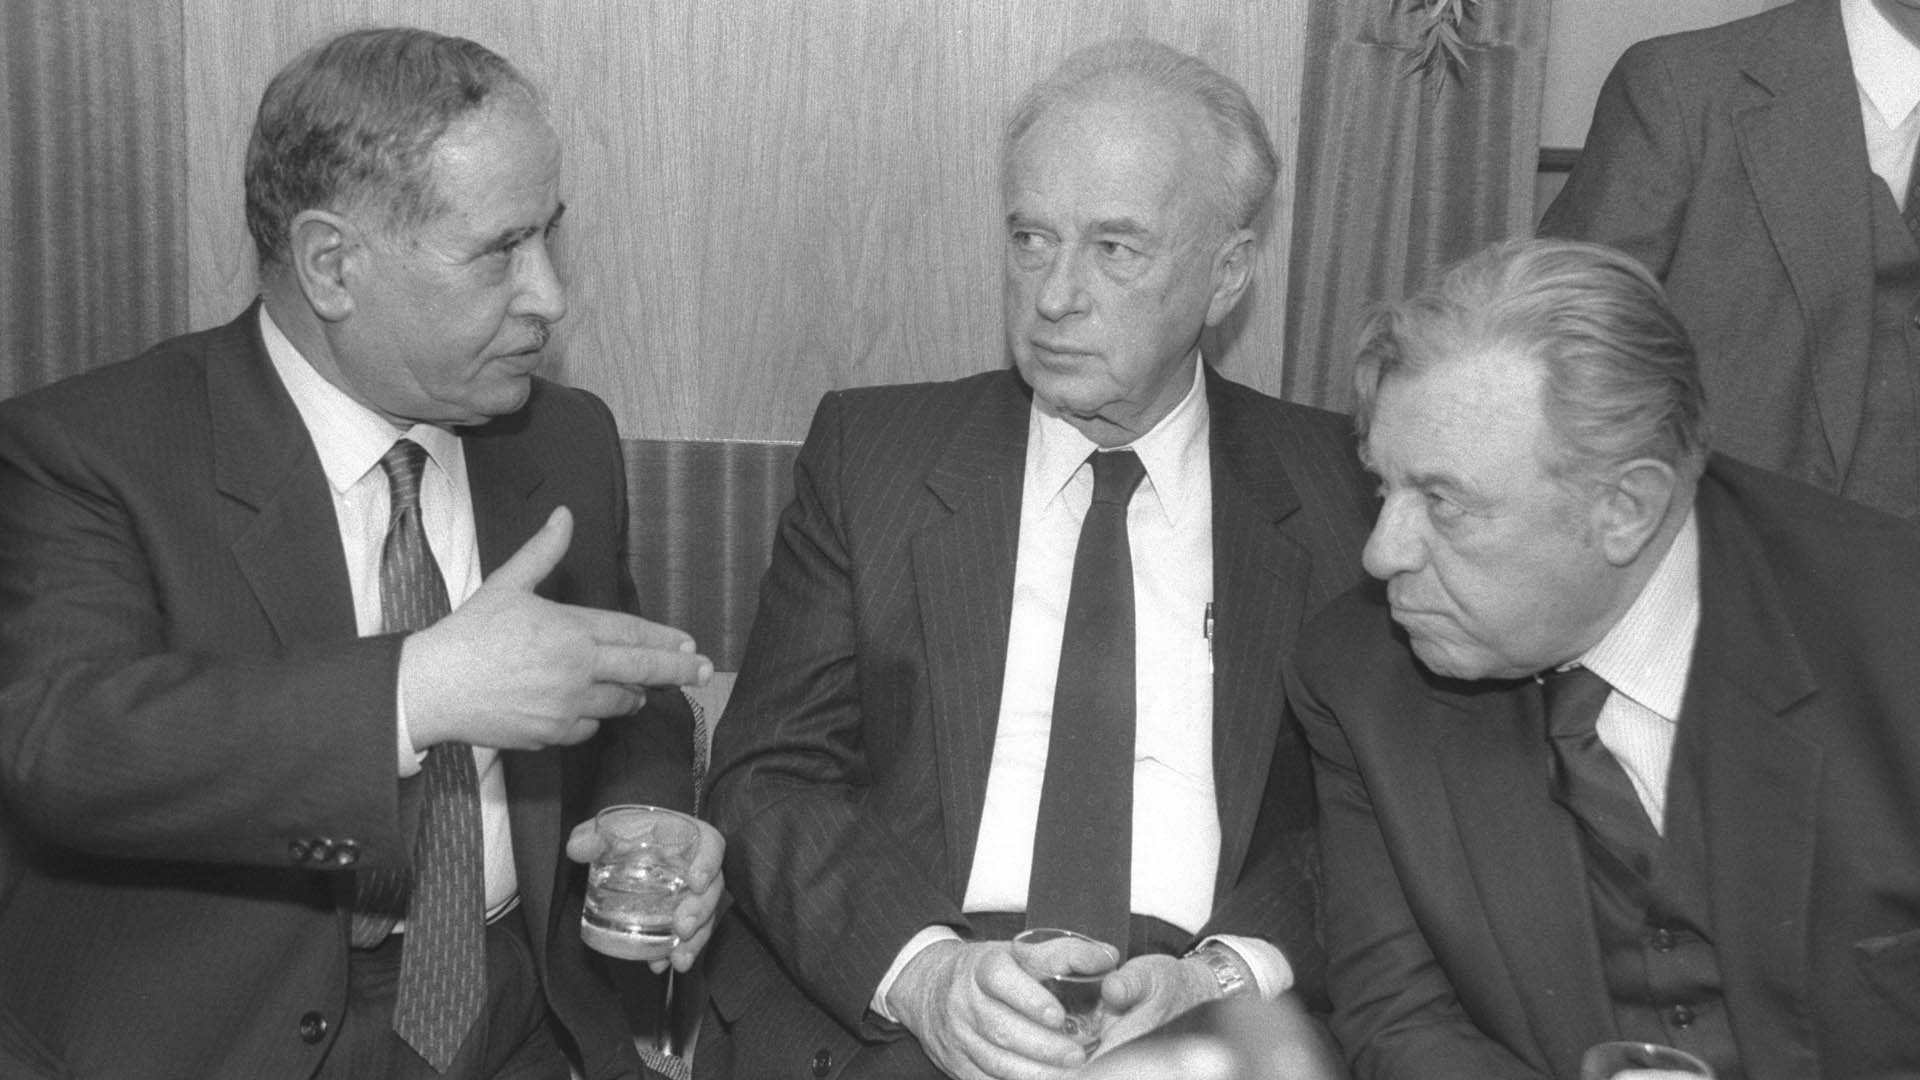 Christliche Feste als Gelegenheit für Gespräche: Der Bürgermeister Bethlehems, Elias Fridsch, unterhält sich mit Rabin (M.), damals noch Verteidigungsminister, und dem Jerusalemer Bürgermeister Teddy Kollek bei einem Empfang am Weihnachtsabend 1985 in Bethlehem